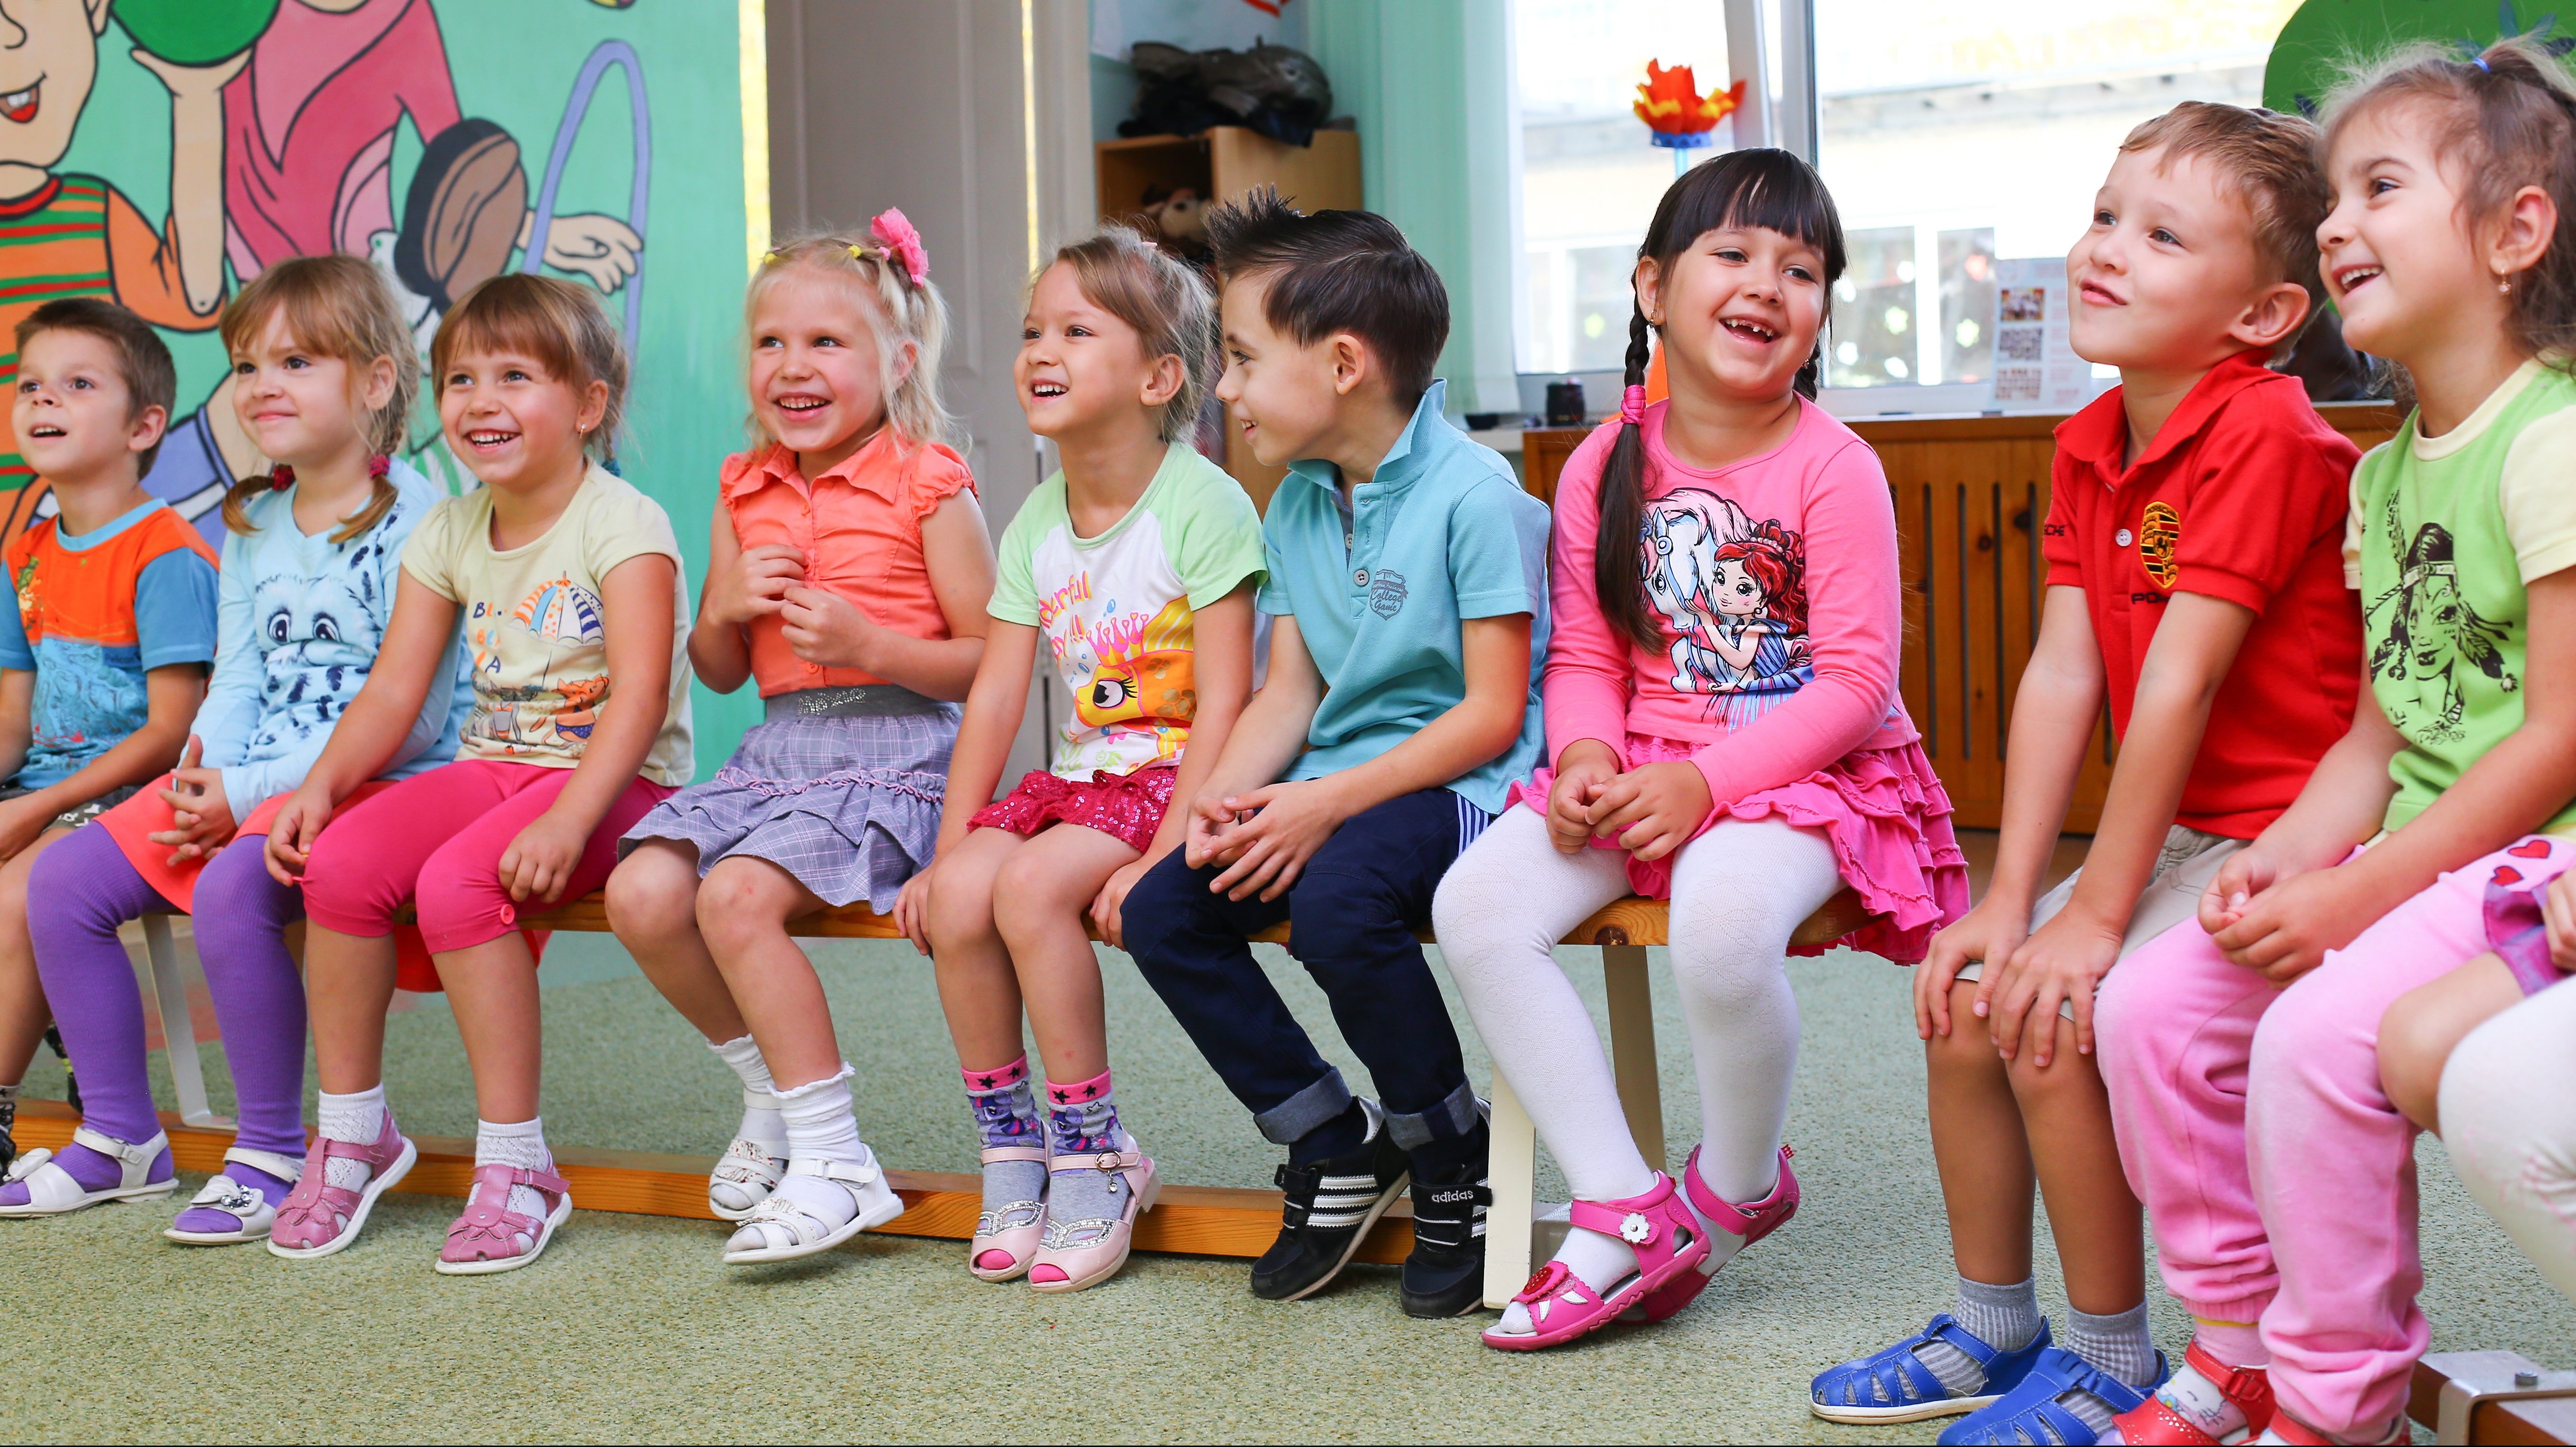 Tio leende barn i färgglada kläder sitter på en bänk i en halvcirkel. Bakom barnen syns ett fönster och en öppen dörr syns till vänster. Väggen på vänster sida är målad i ljust grön färg med två lekande barn. Golvet är klätt med ljusgrön heltäckningsmatta.